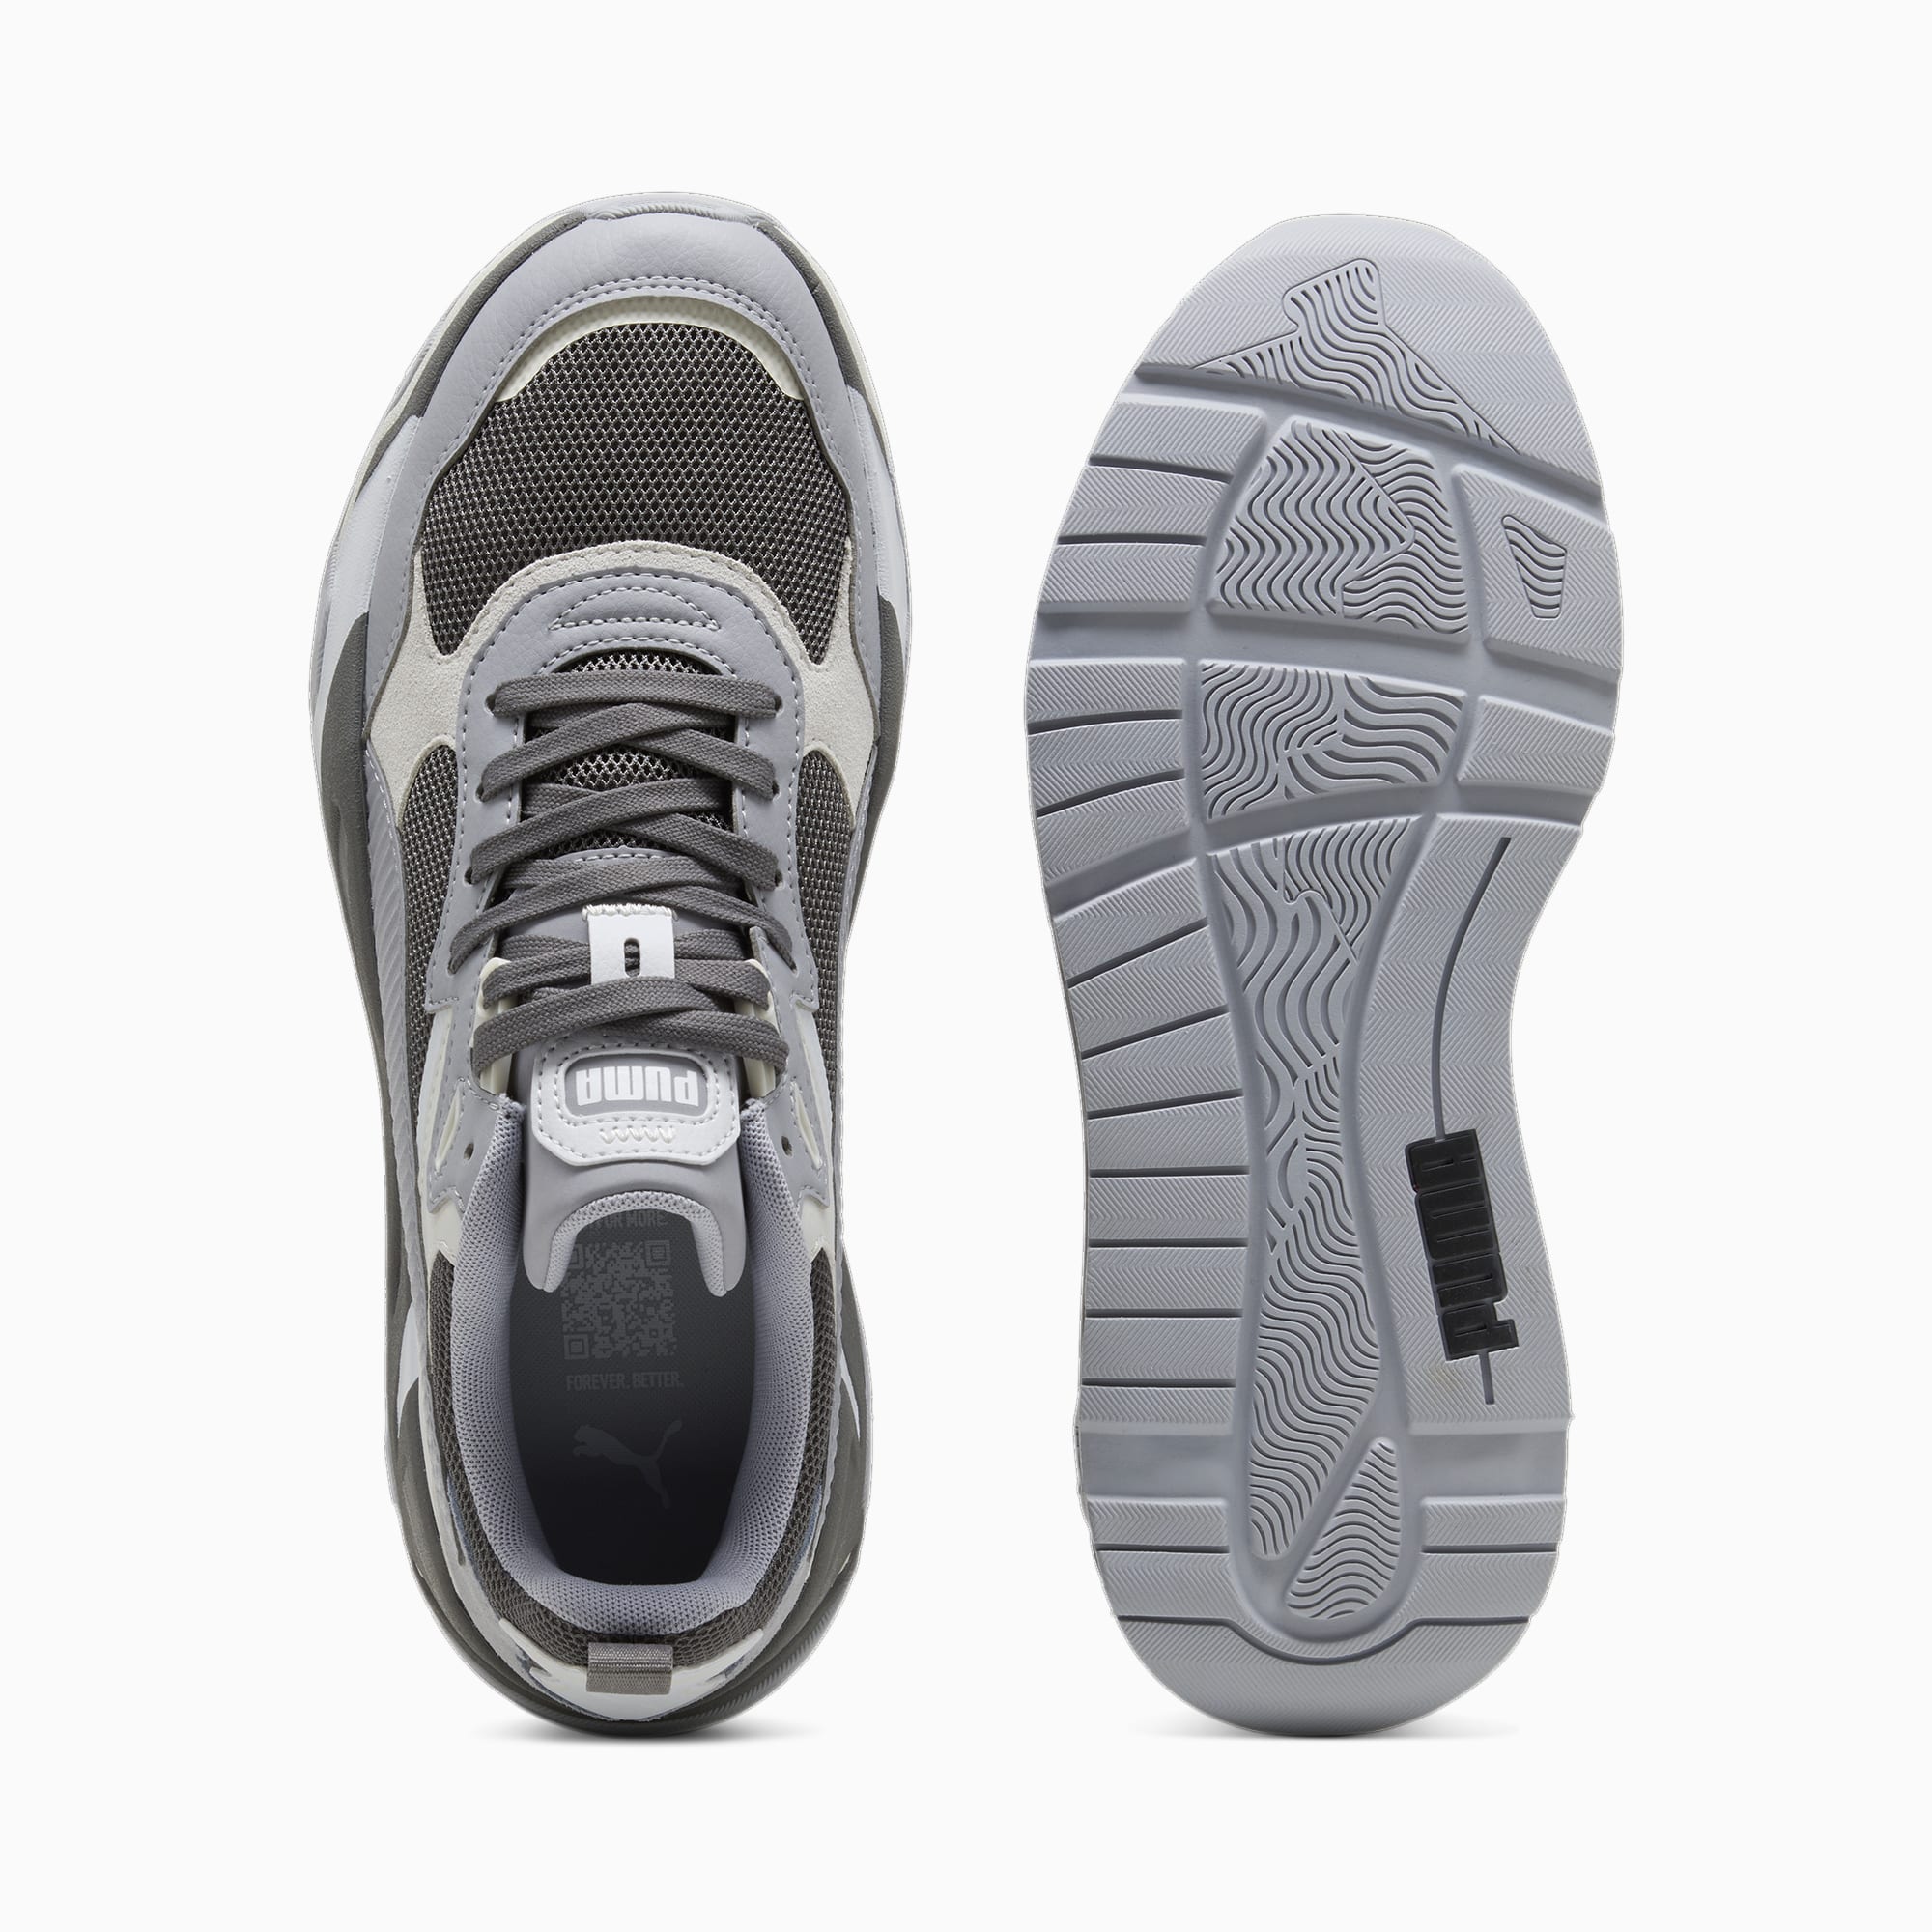 PUMA Trinity Sneakers Men, Cool Dark Grey/Grey Fog/Silver Mist, Size 35,5, Shoes